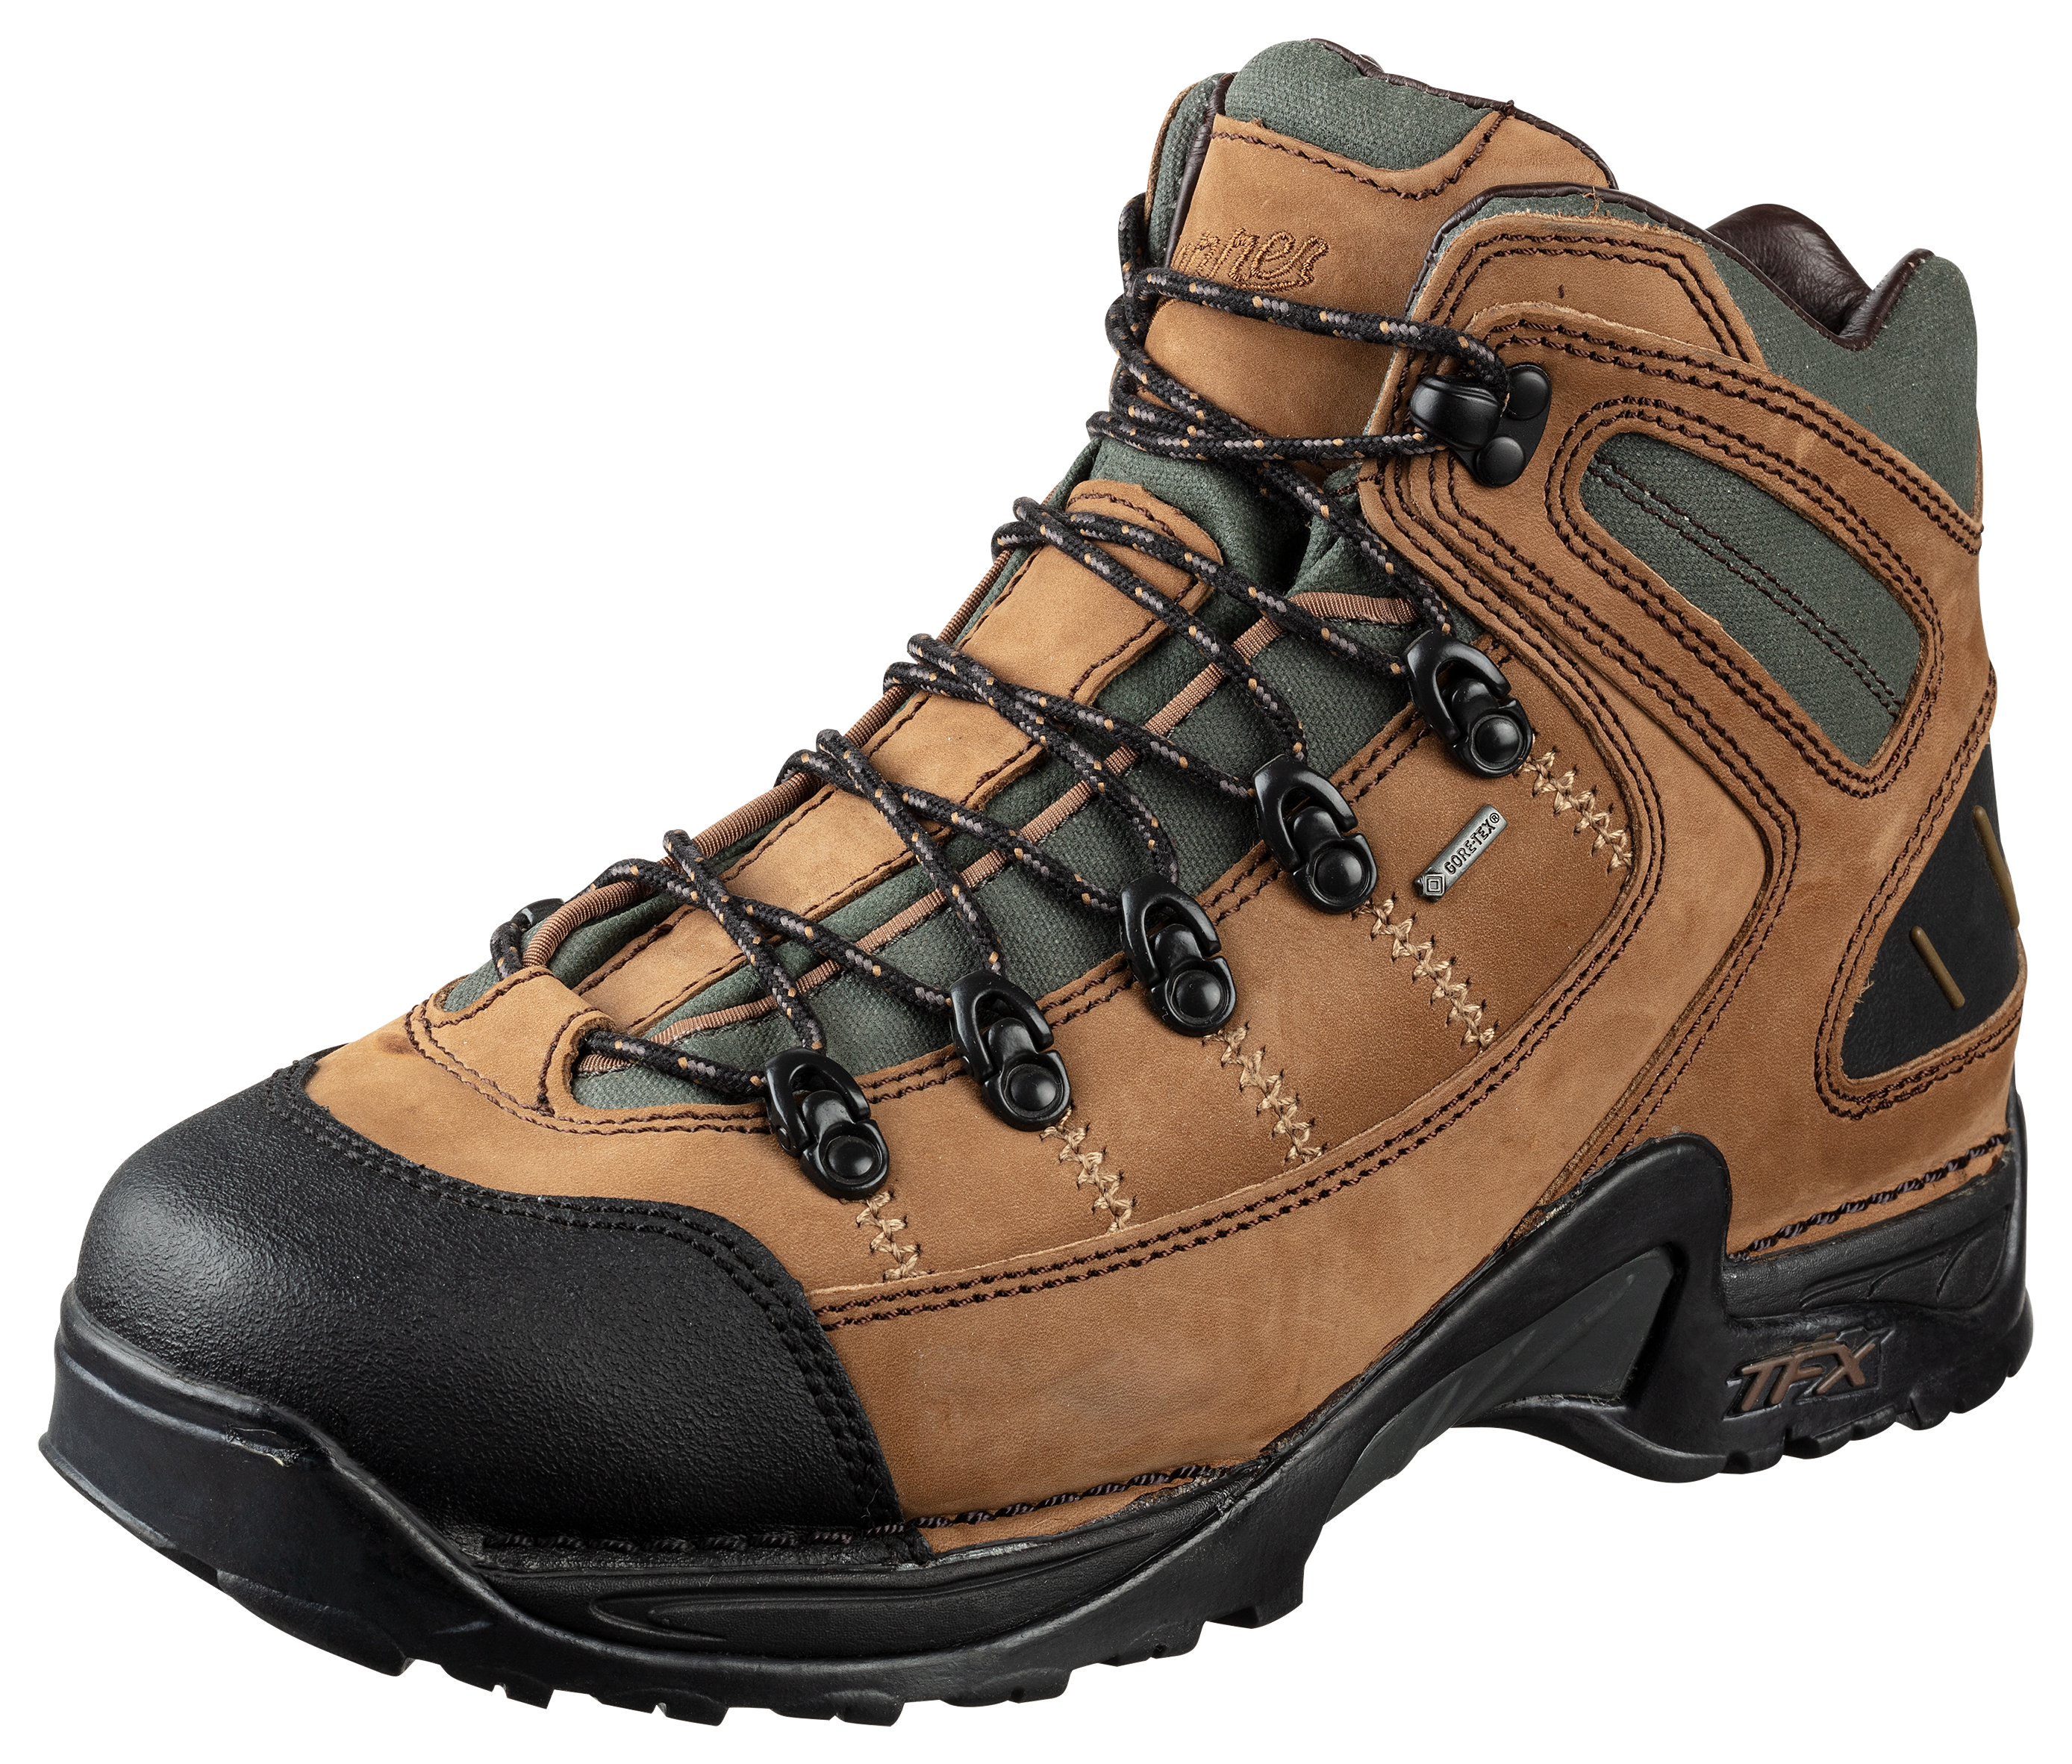 Danner 453 GORE-TEX Waterproof Hiking Boots for Men - Dark Tan - 7M